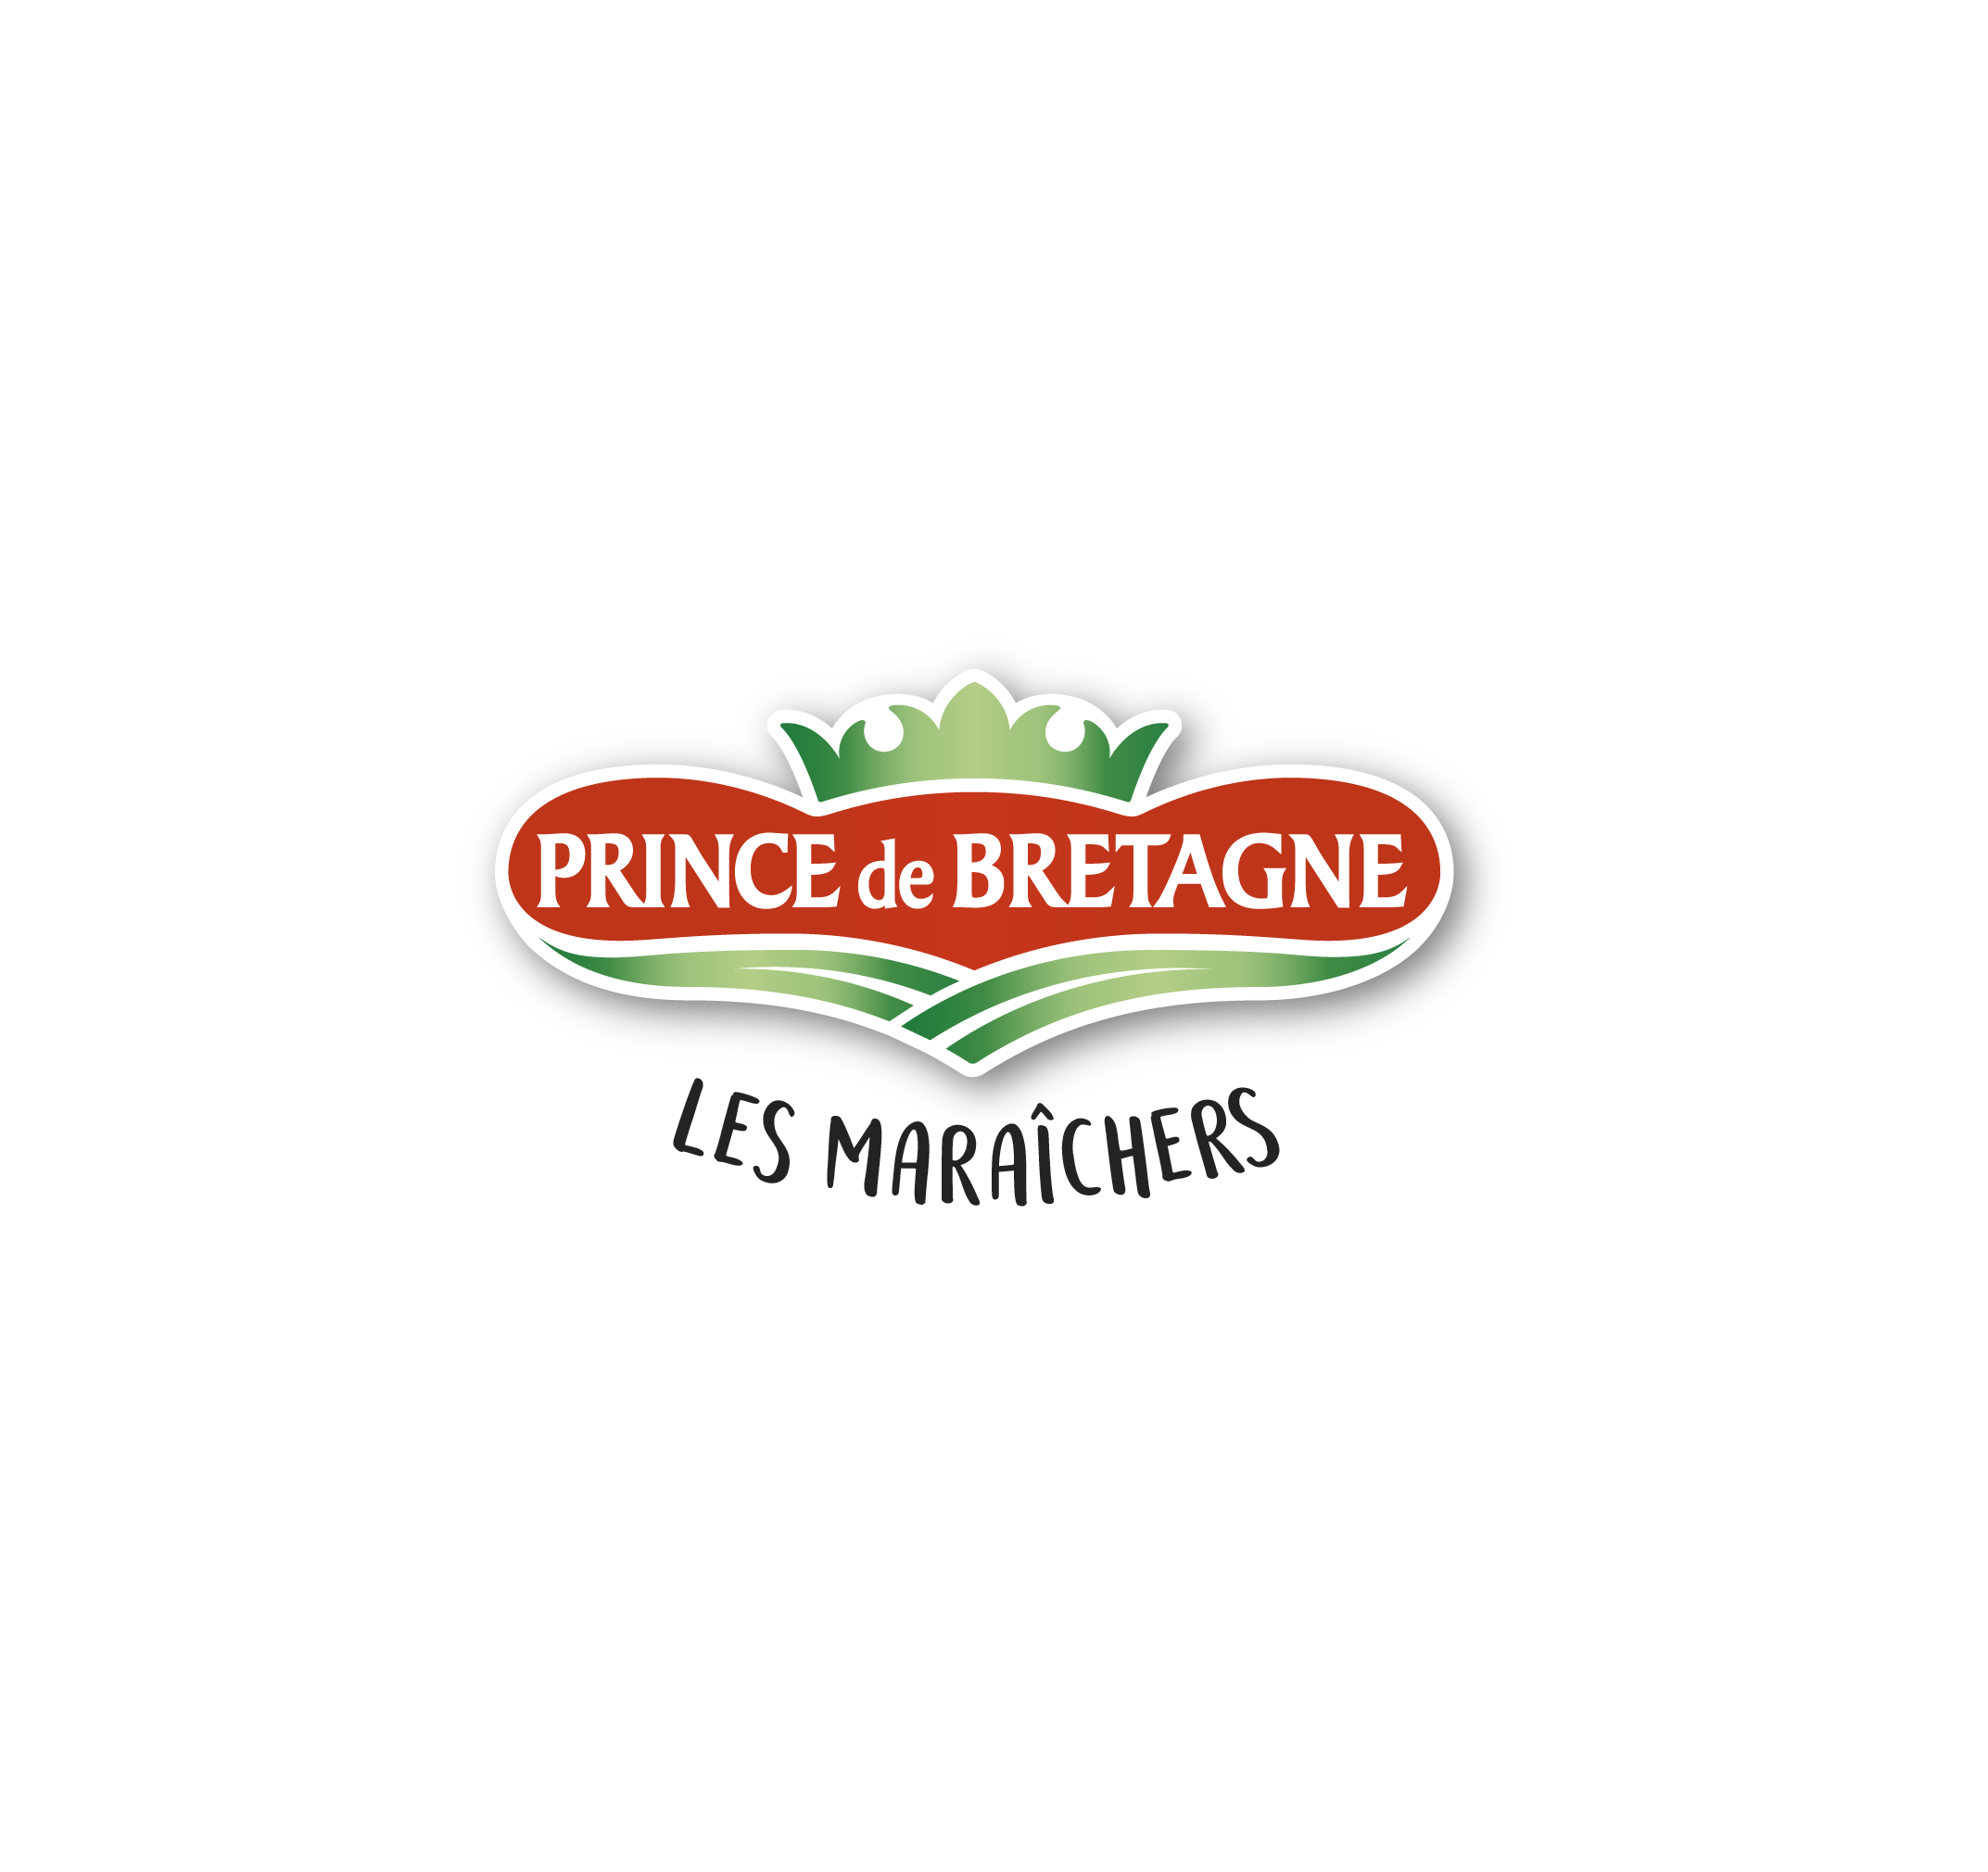 Prince de Bretagne